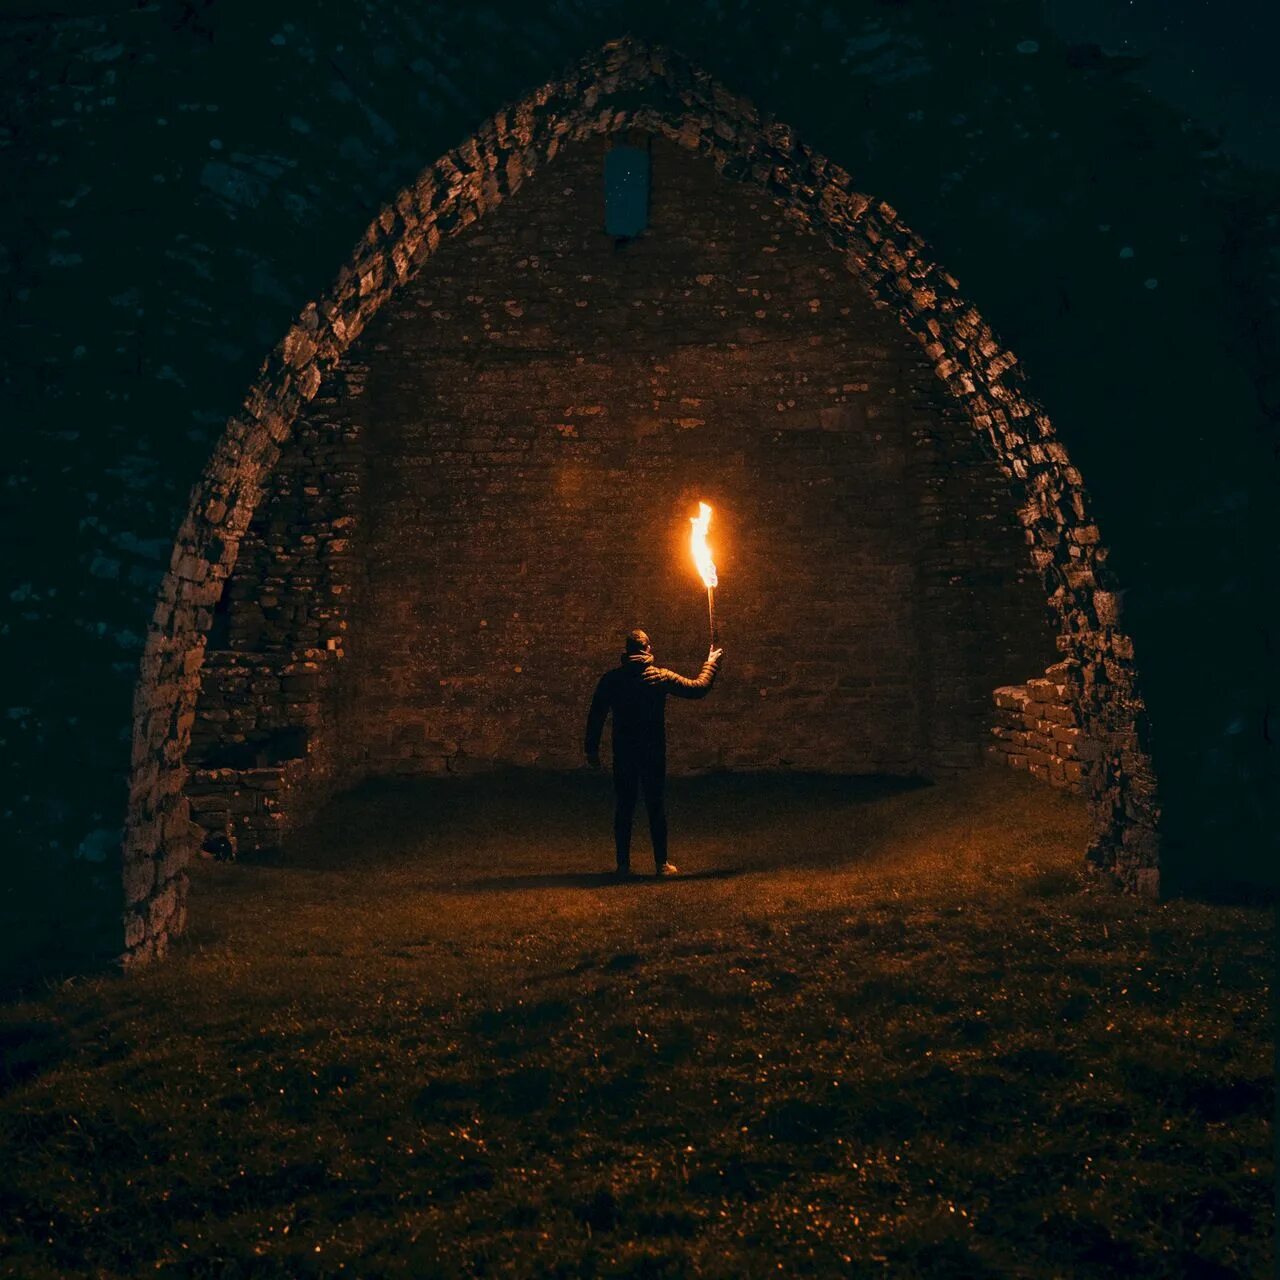 Оттуда в пляшущем свете факела поднимались. Человек факел. Человек с факелом в темноте. Человек с факелом в пещере. Человек с факелом в руке.